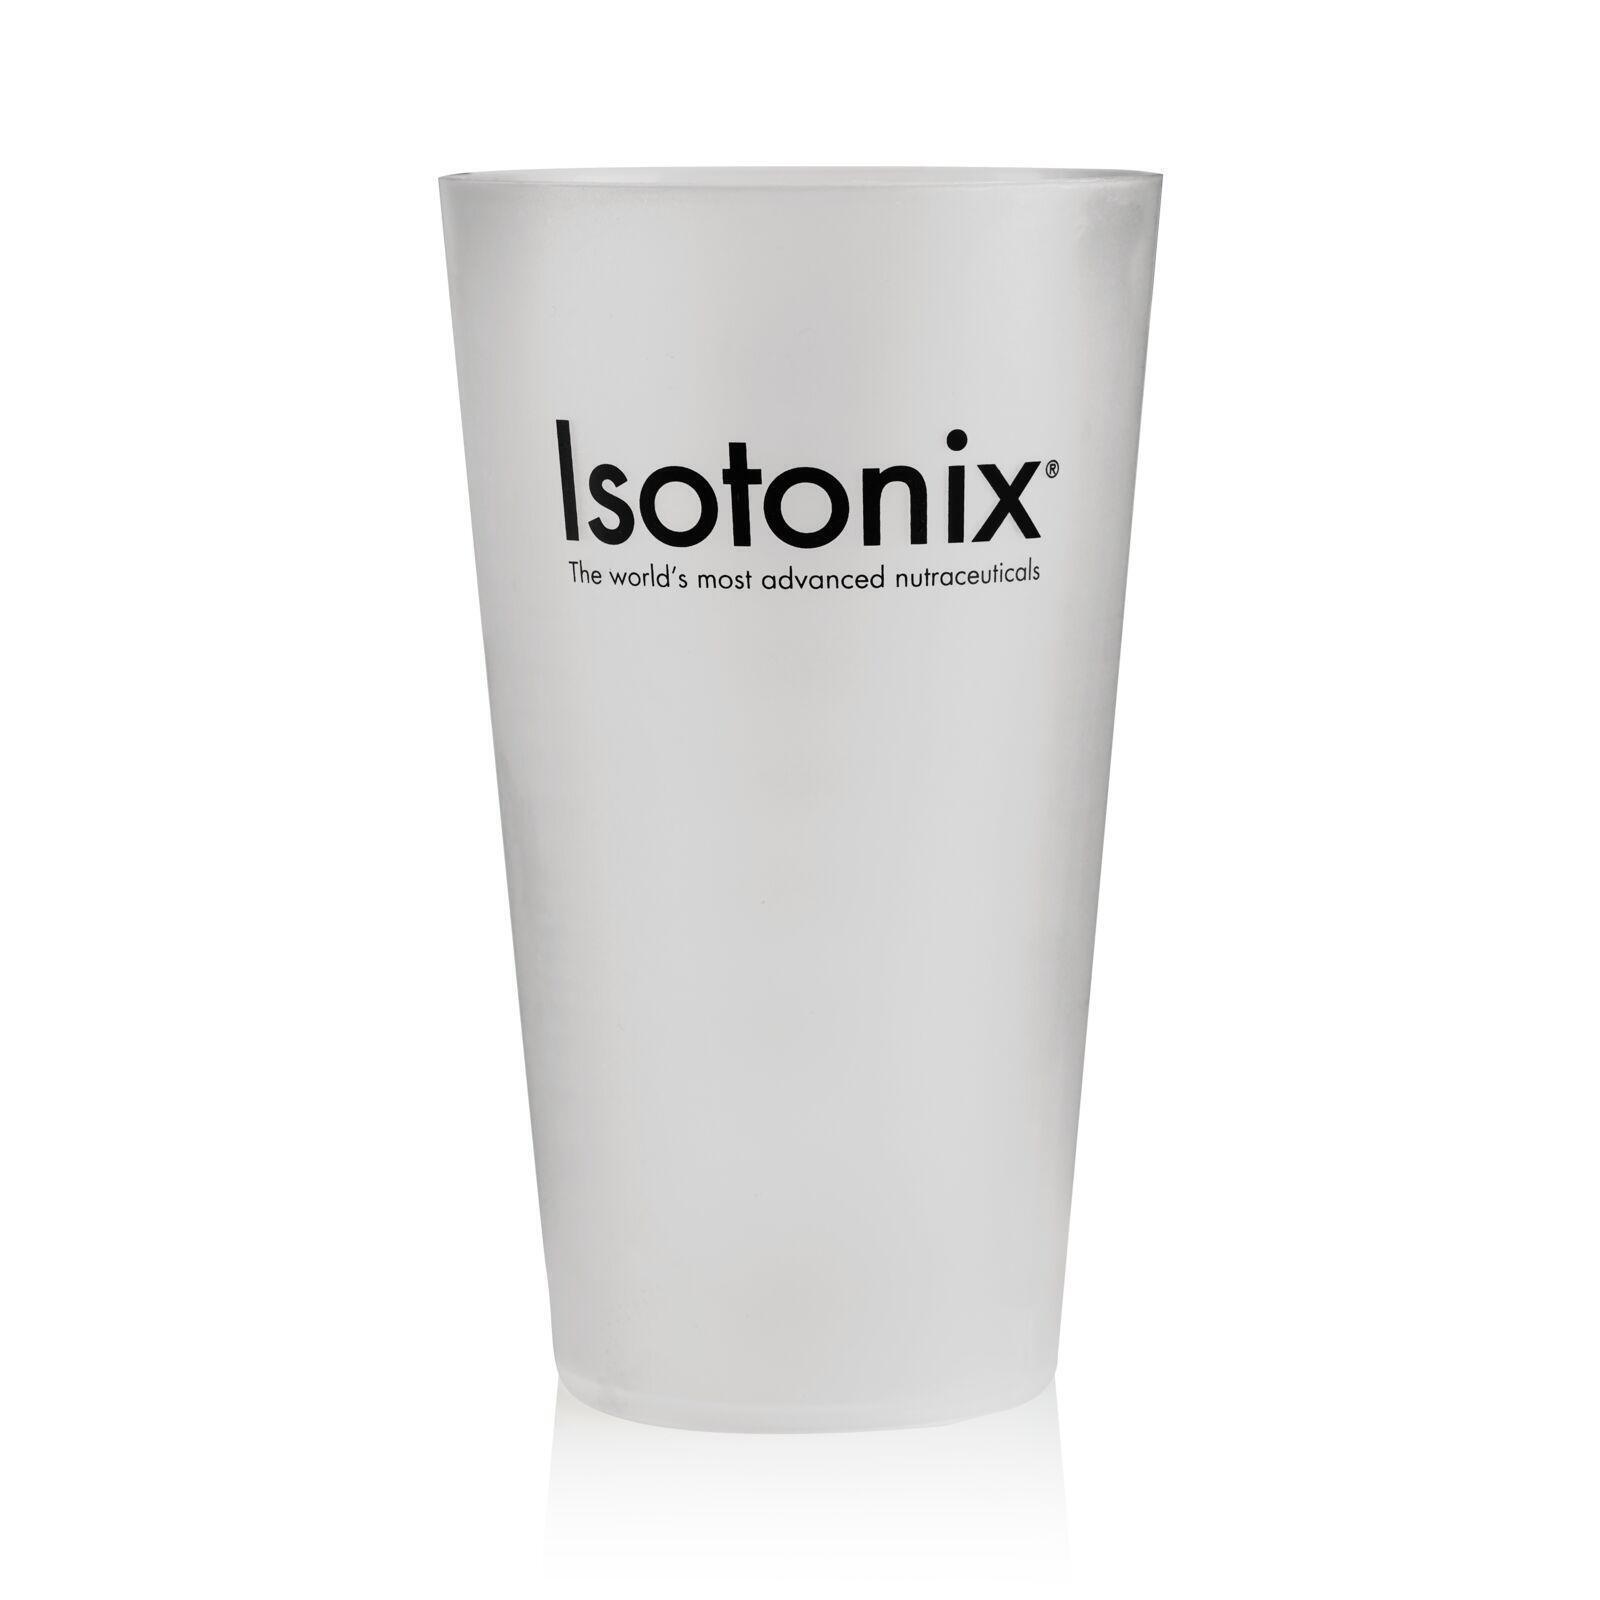  Isotonix Plastic Serving Cup